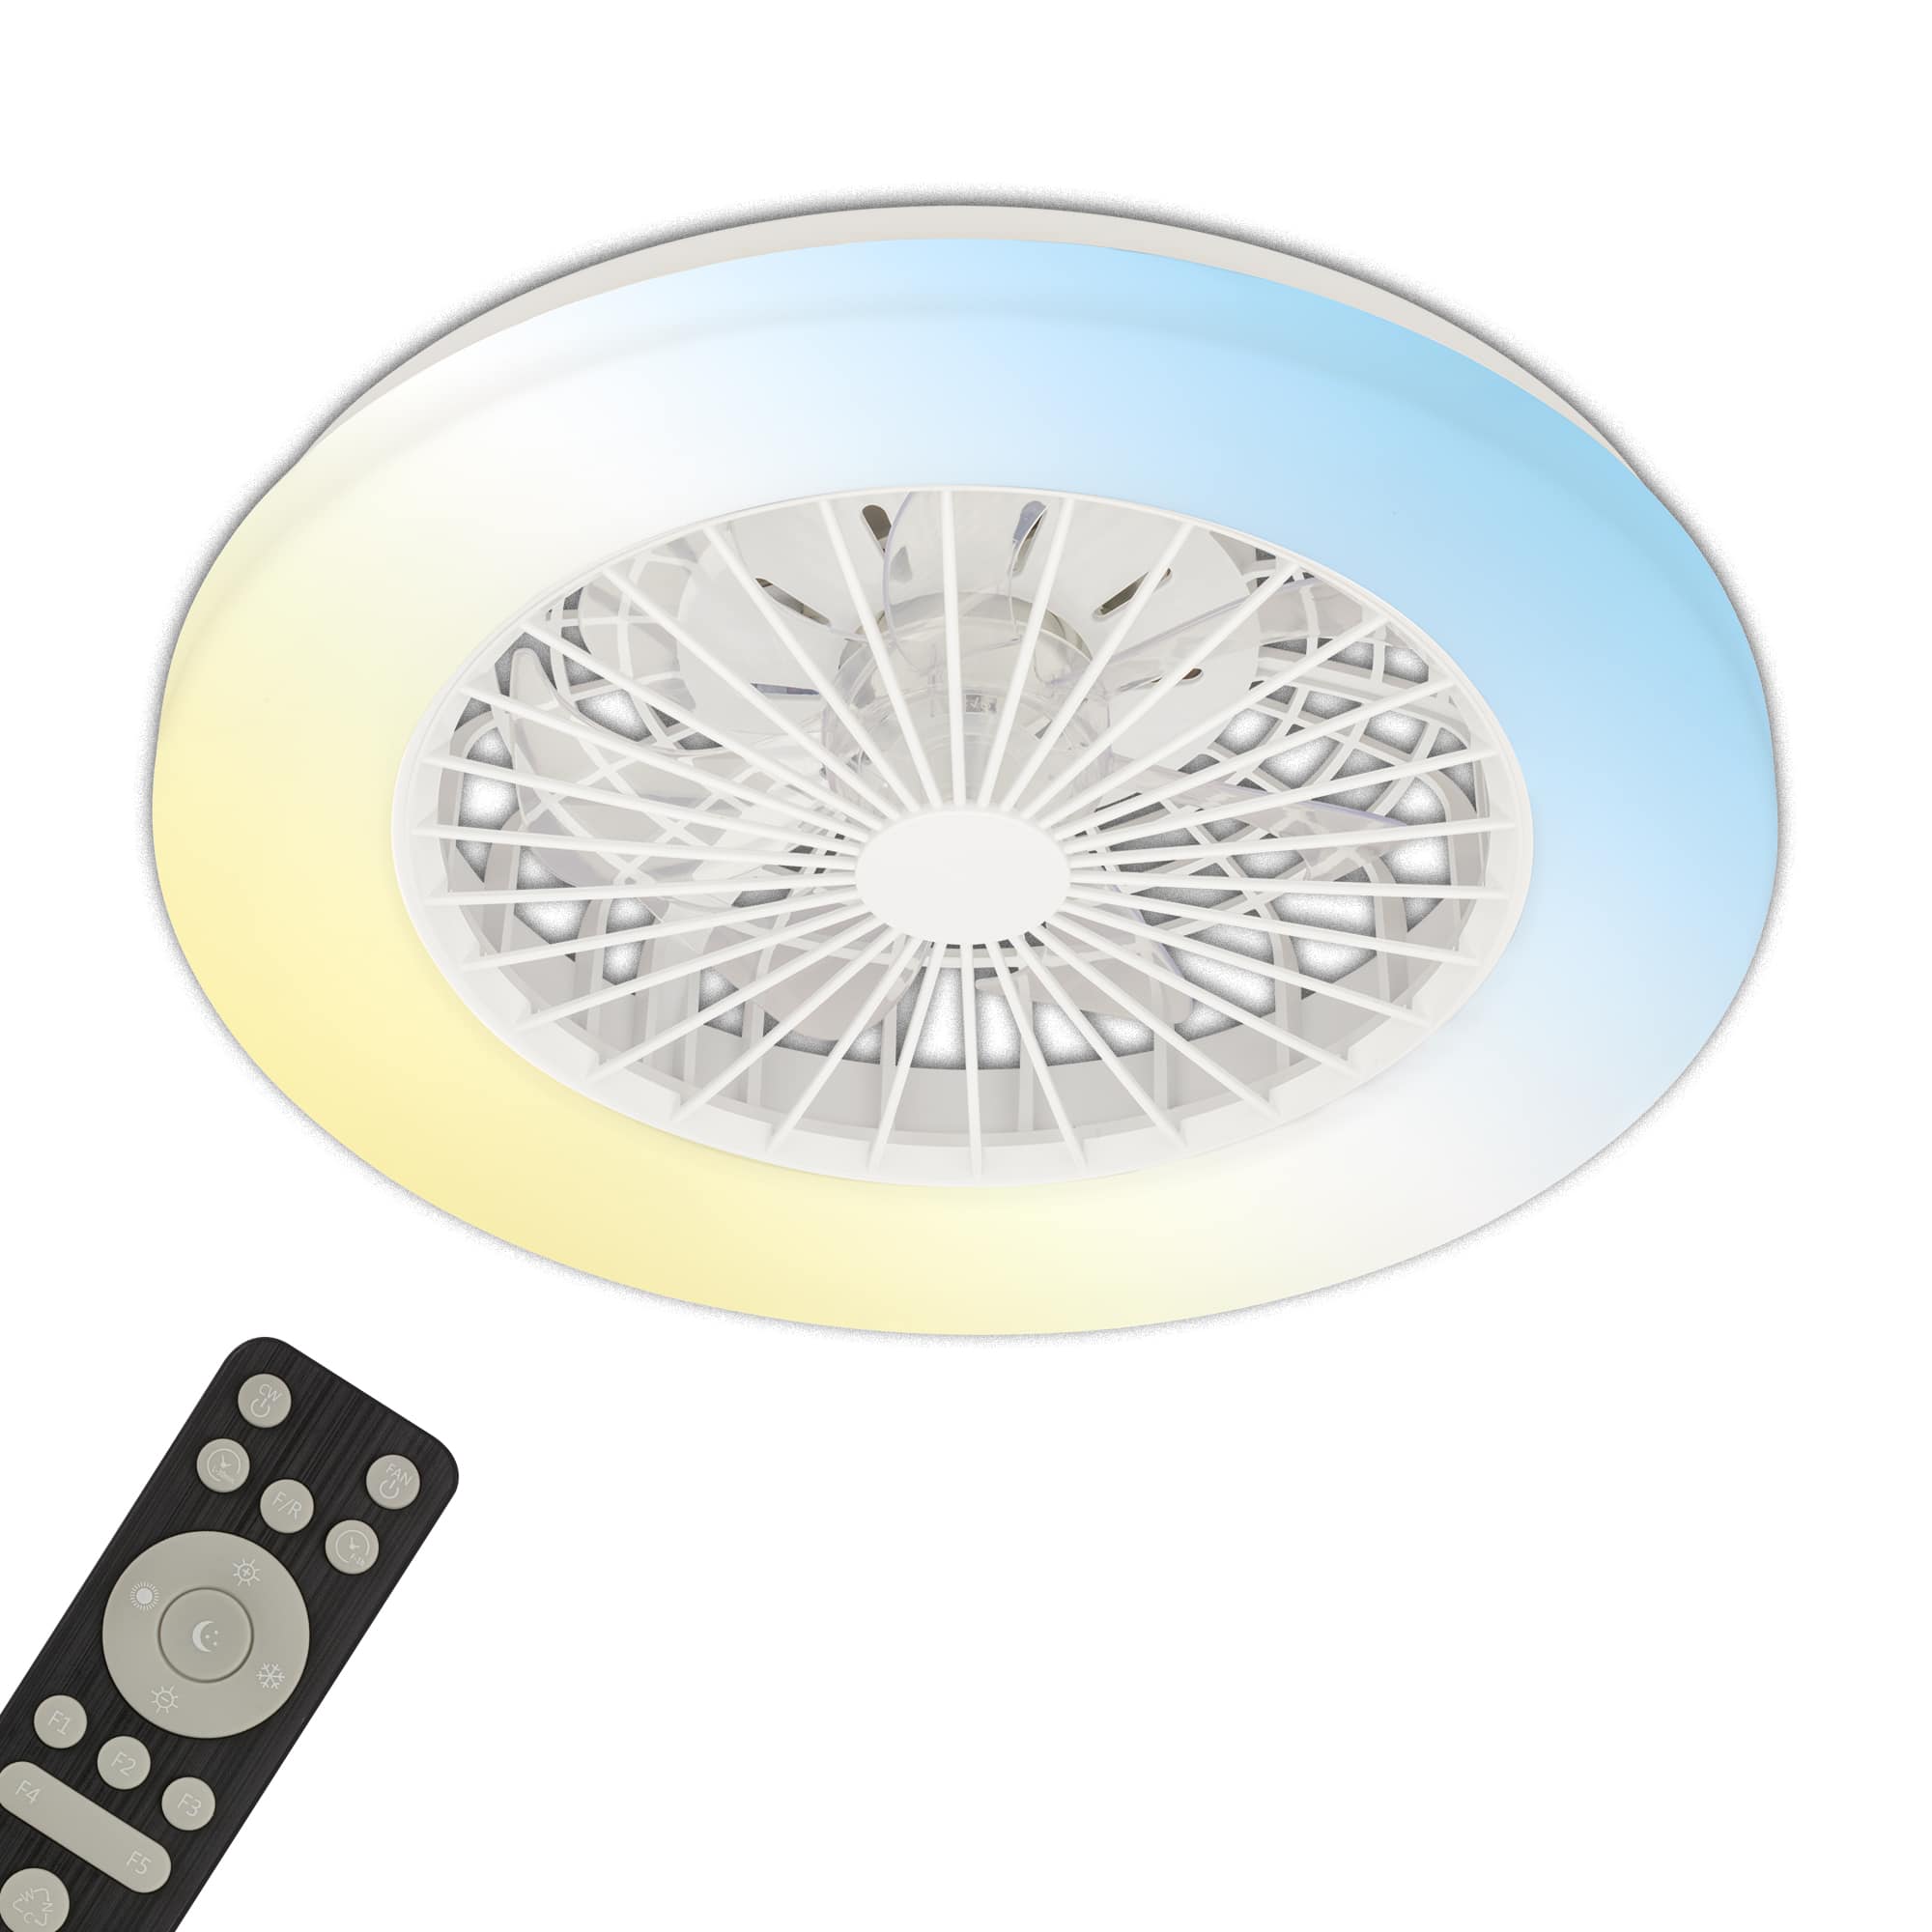 Briloner LED ceiling light with fan, 5 speeds, adjustable light colour